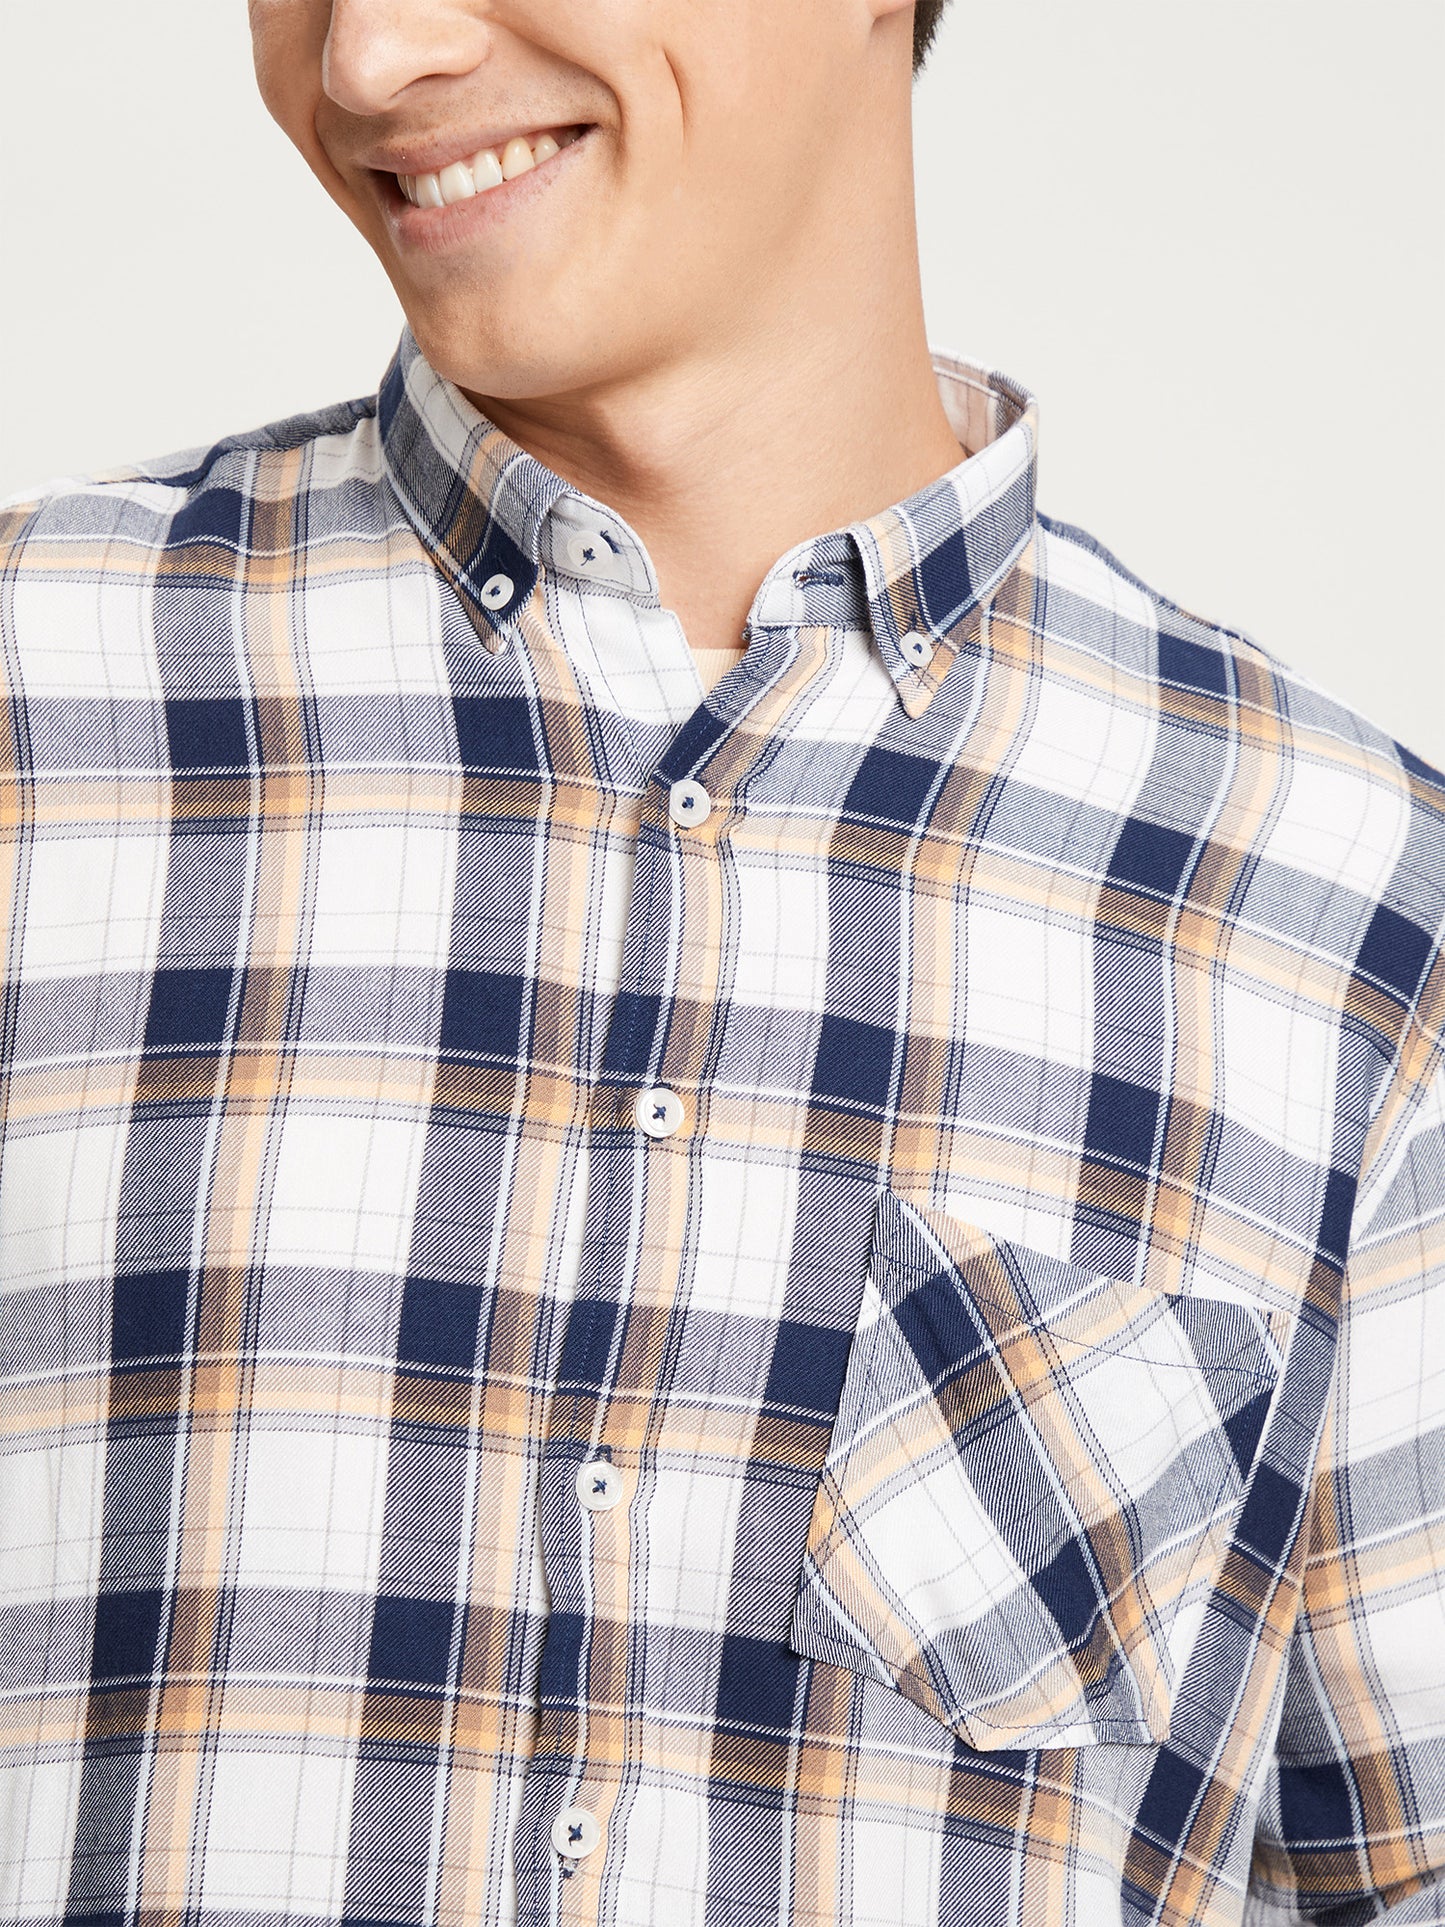 Men's regular long-sleeved shirt checked navy blue.